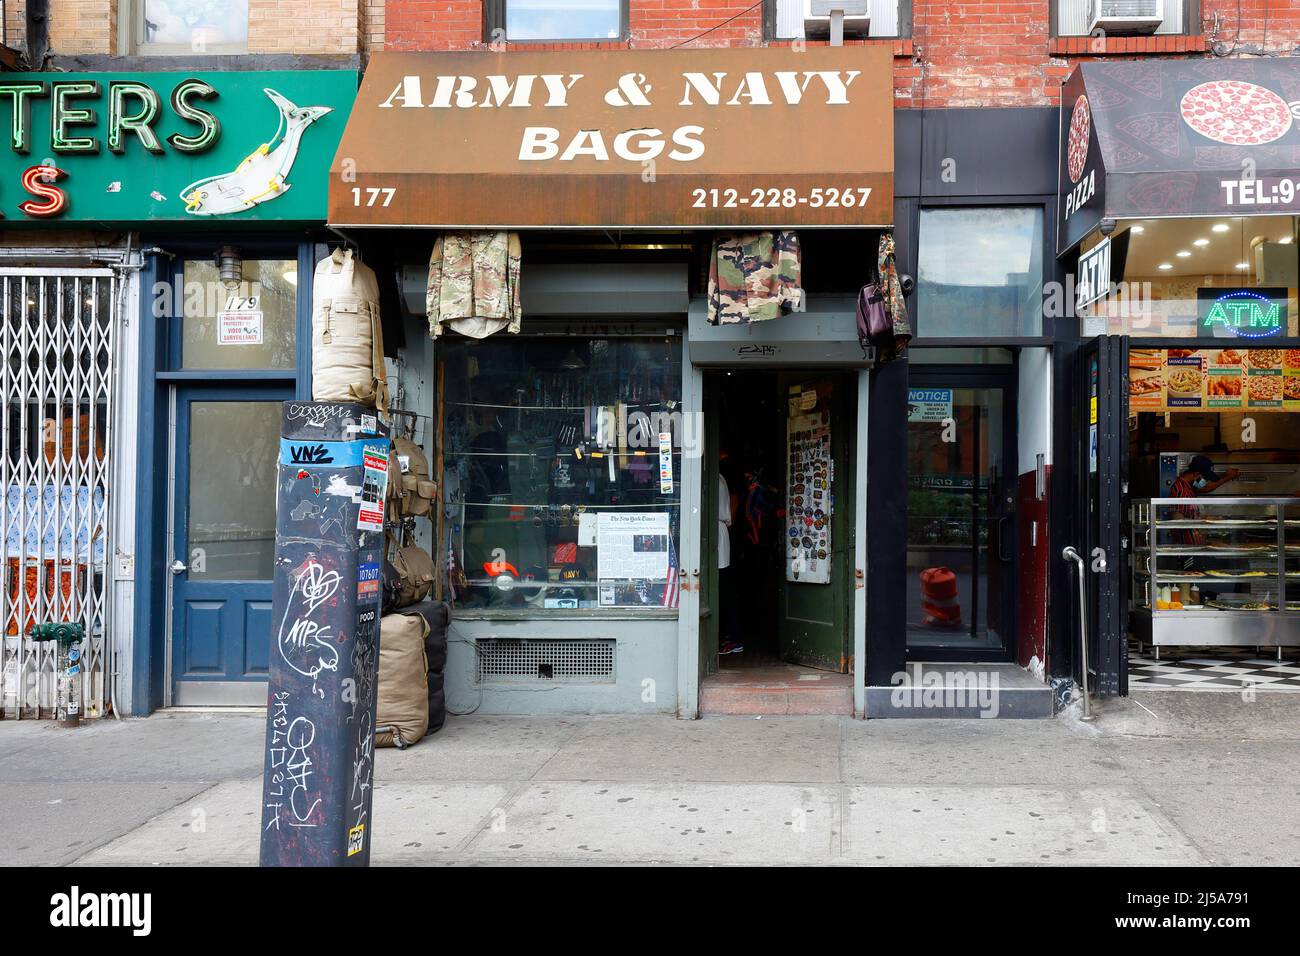 Army & Navy Bags, 177 E Houston St, New York, New York, New York photo d'un magasin de vêtements et de surplus dans le Lower East Side à Manhattan. Banque D'Images